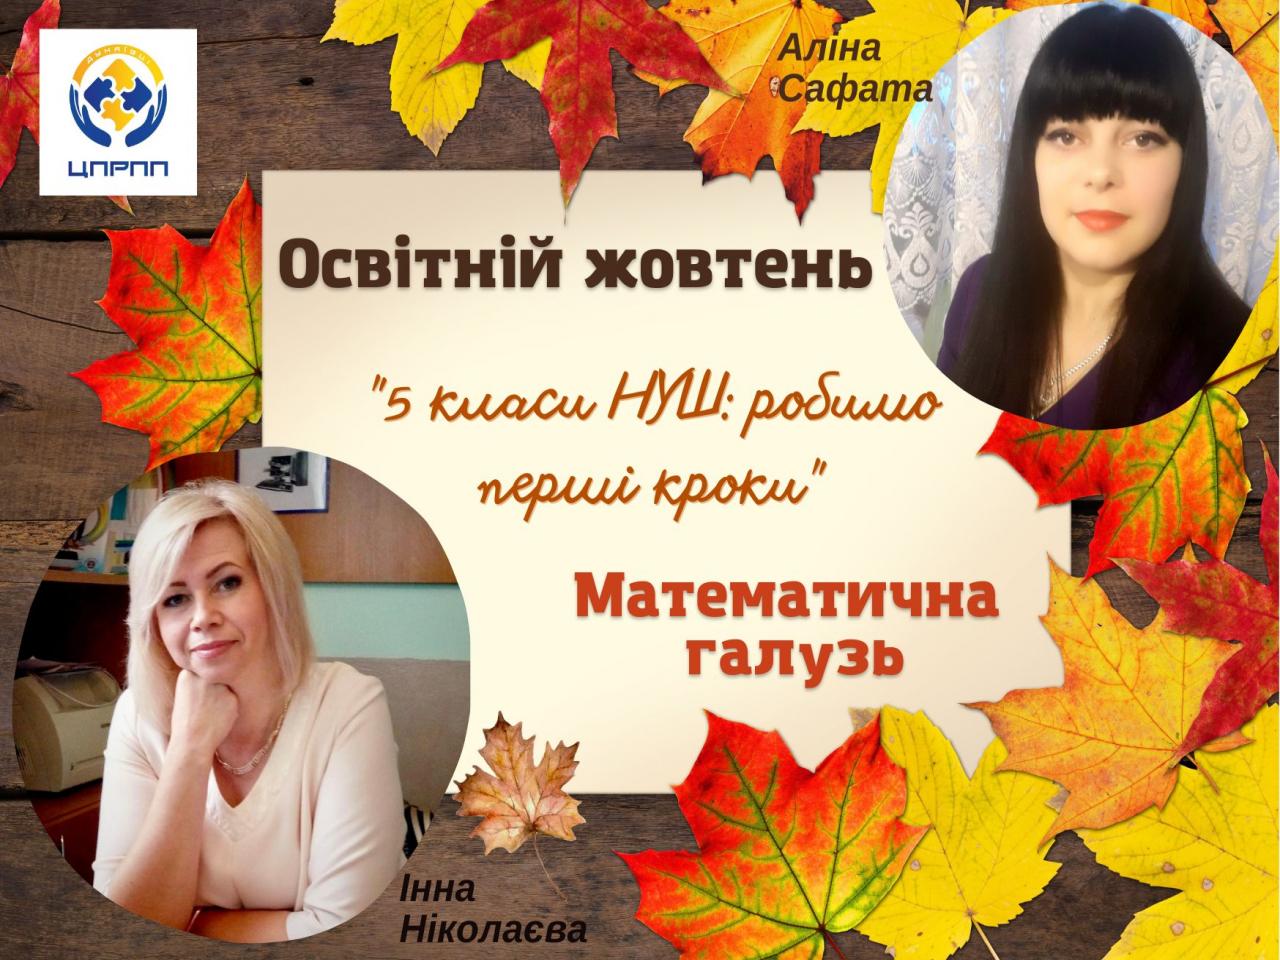 http://dunrada.gov.ua/uploadfile/archive_news/2022/10/21/2022-10-21_6194/images/images-49015.jpg